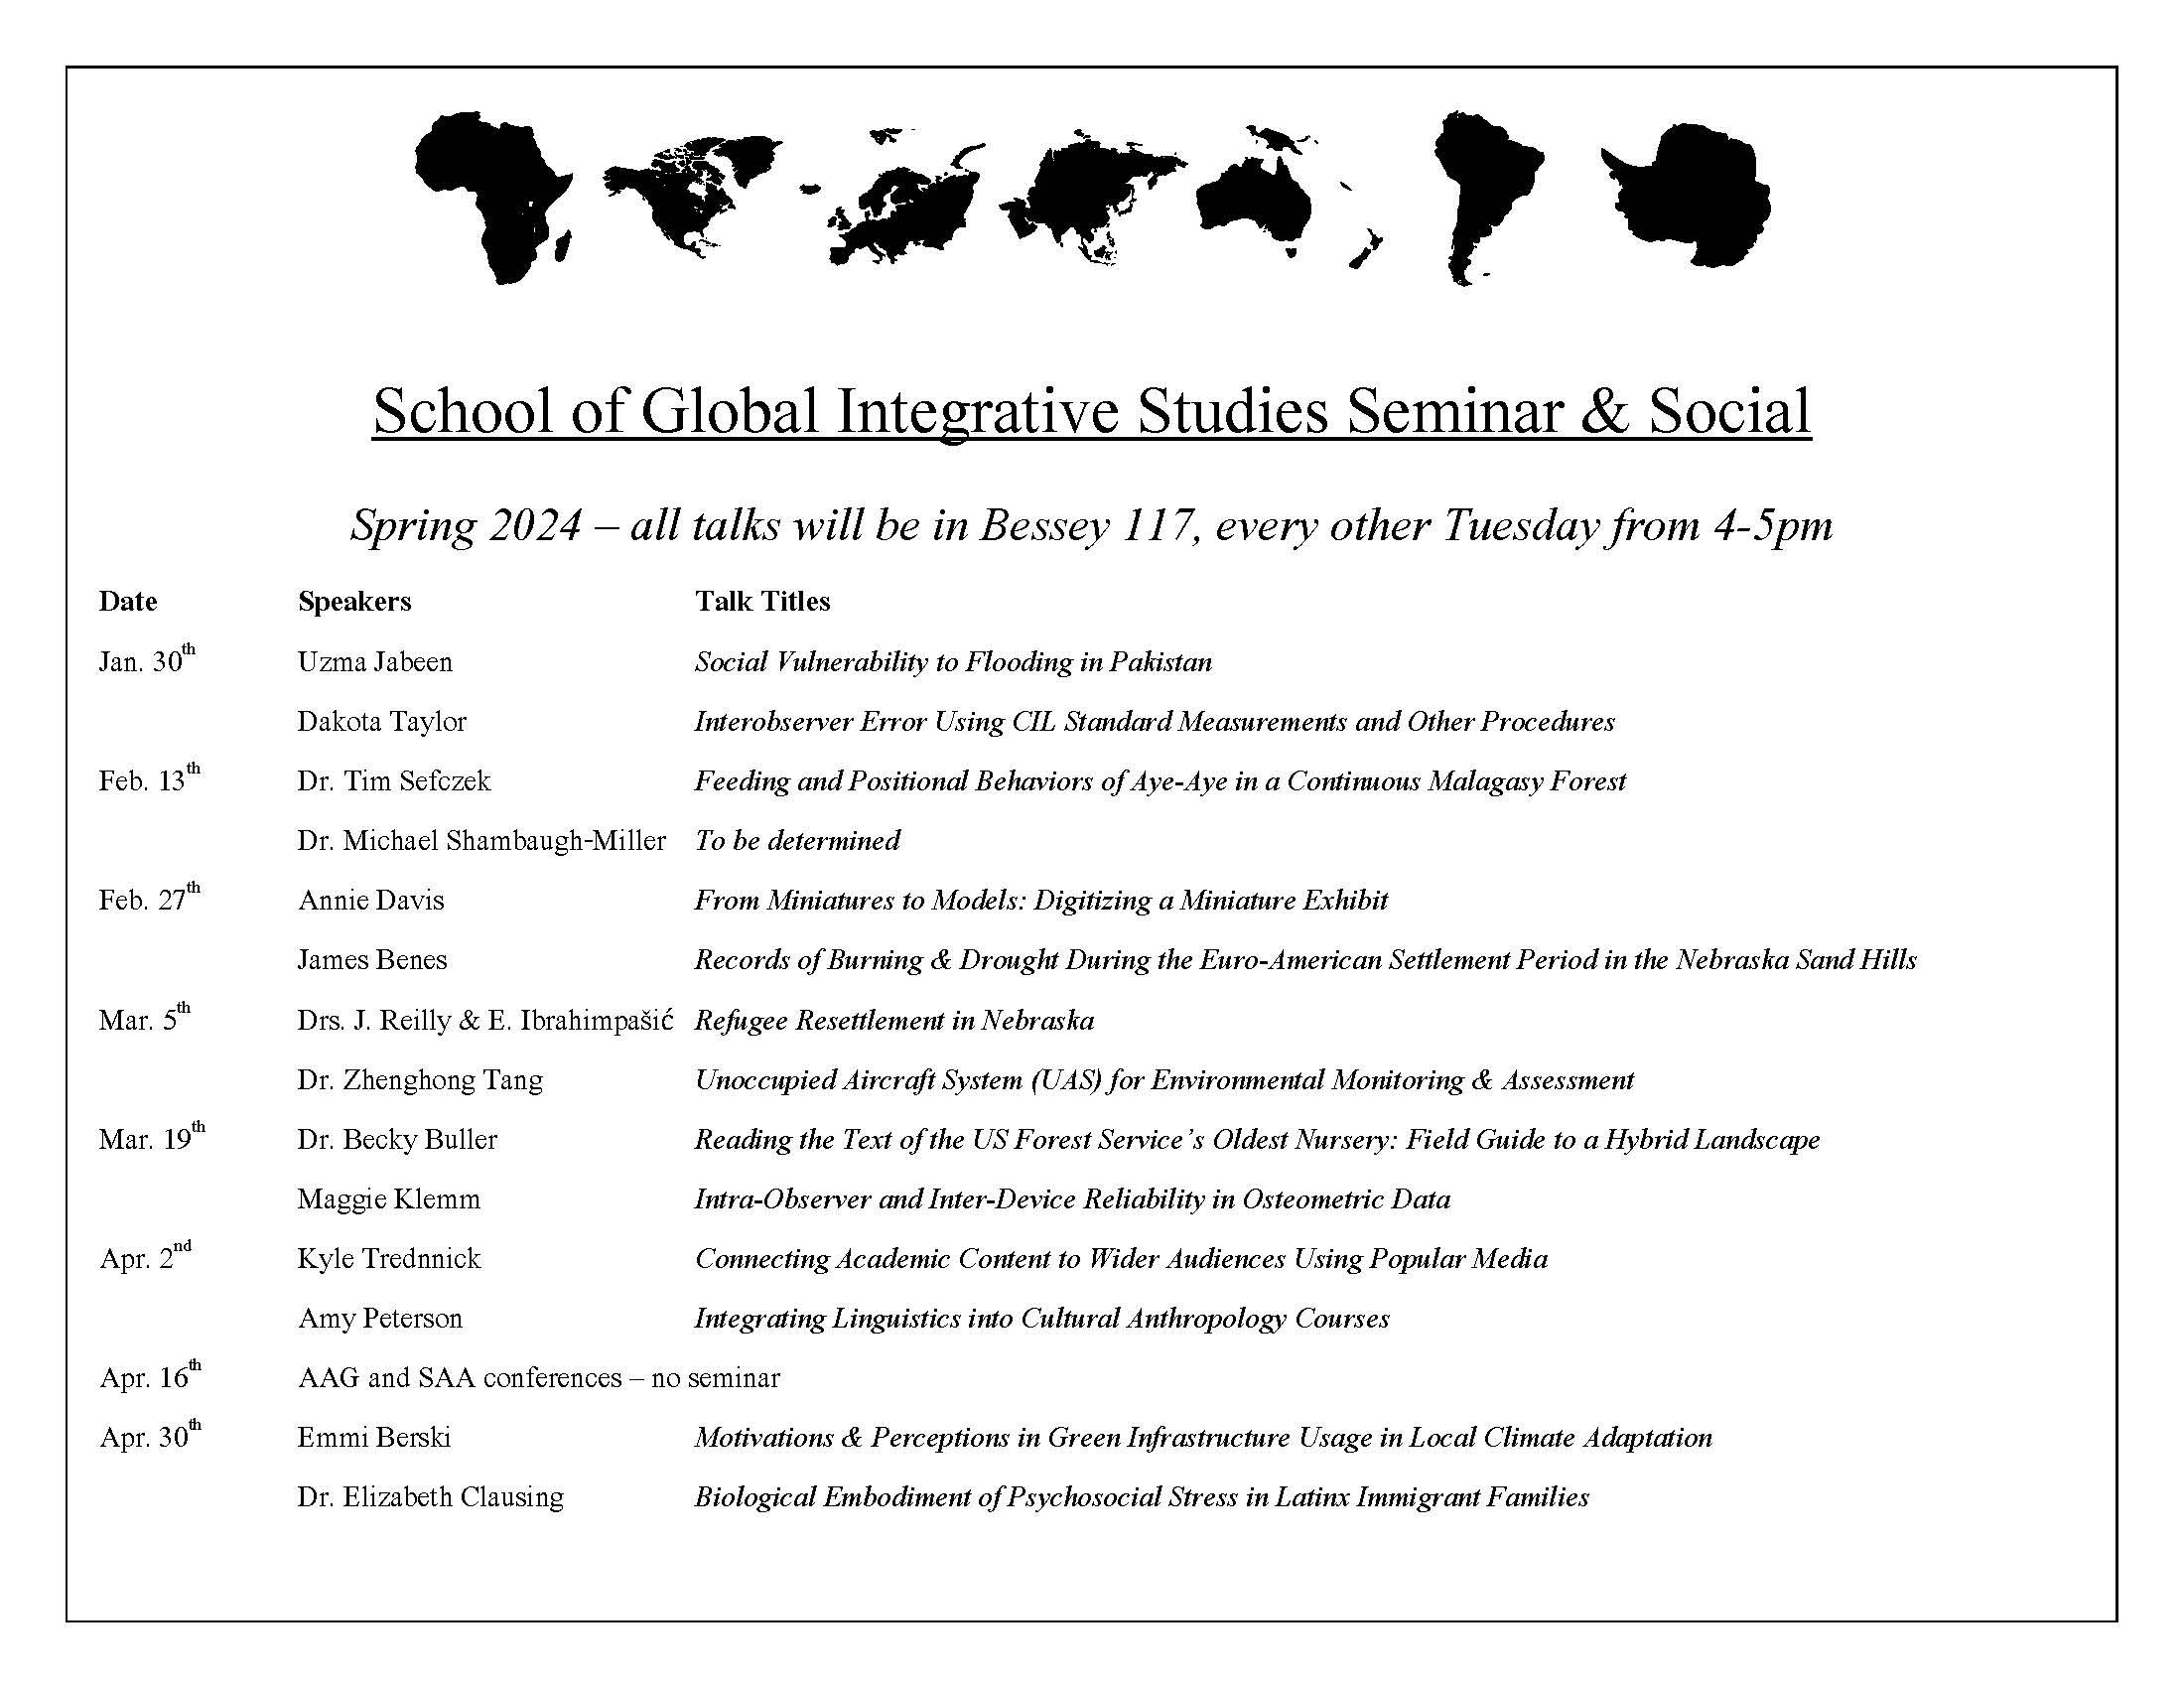 SGIS Seminar & Social Talks Spring 2024 Announce University of